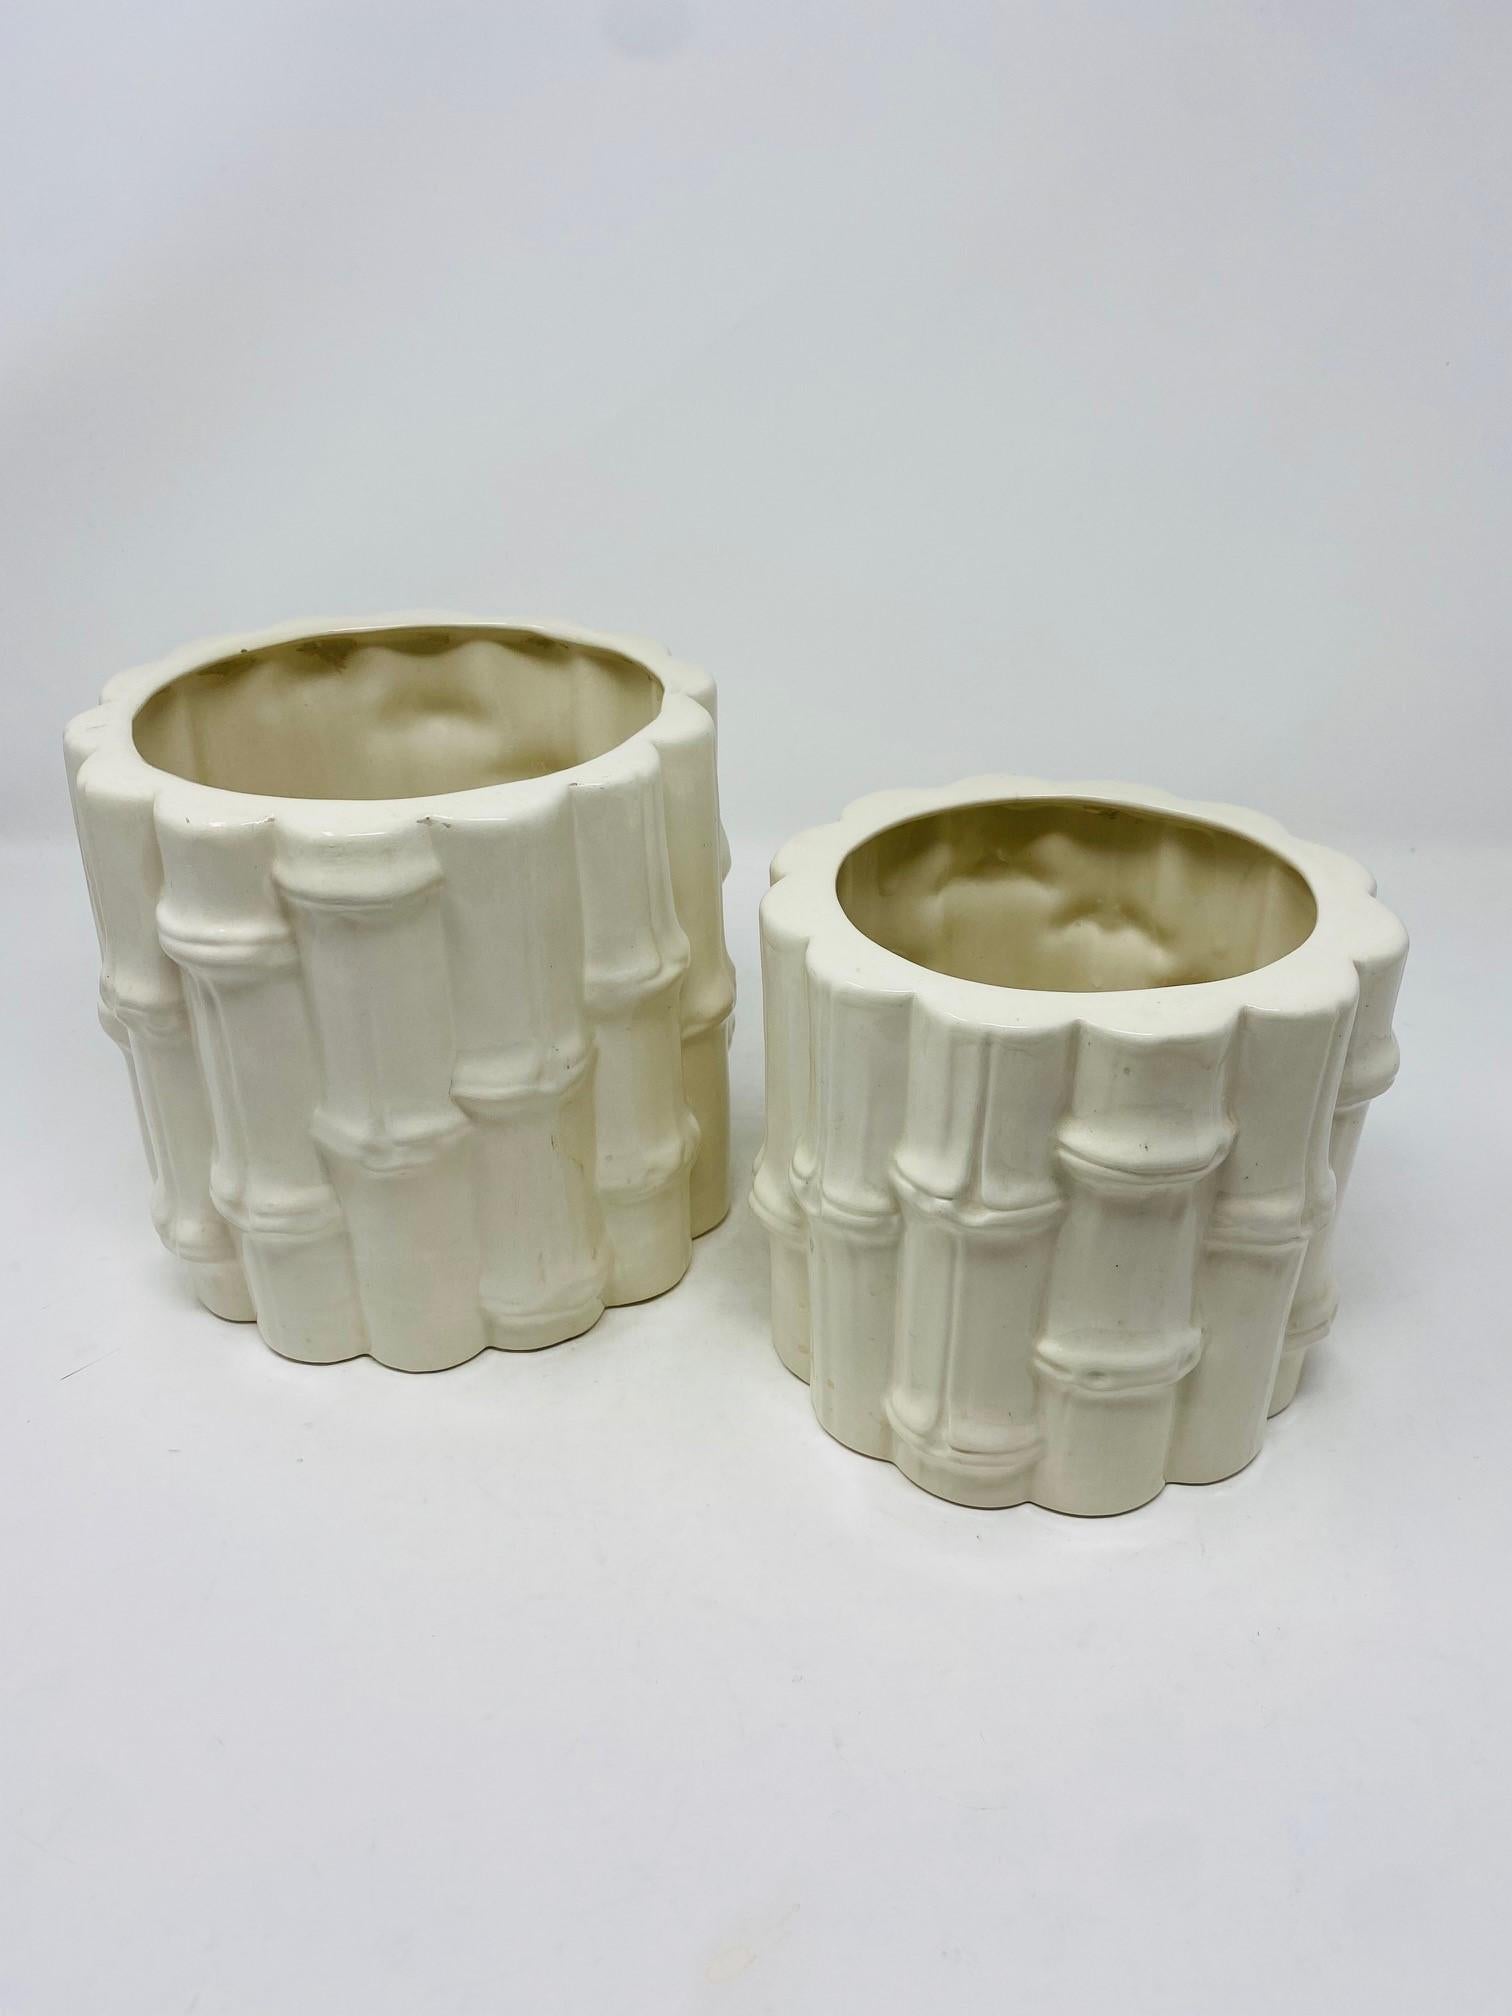 Schöner Satz von Keramik Majolika Bambus-Stil Vasen.  Dieses schöne Set bietet zwei verschiedene Größen, die zu Ihrer Einrichtung passen.  Wunderschön verarbeitet in einem Stil, der an Bambus erinnert, und mit einer schönen weißen Keramikglasur. 